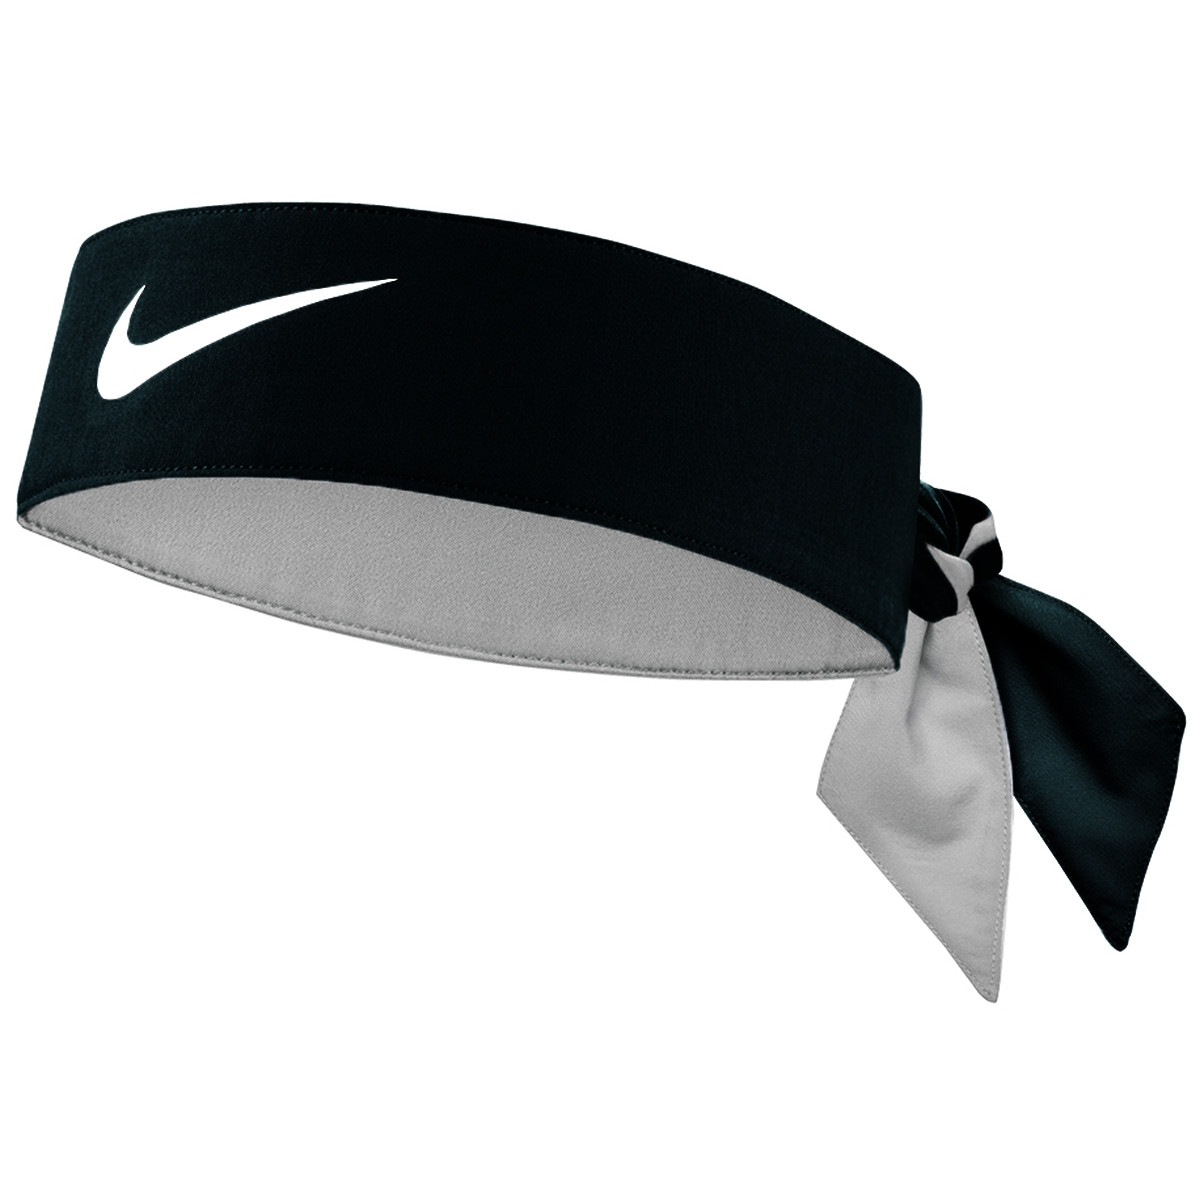 Bandeau Nike Tennis Premier Noir 